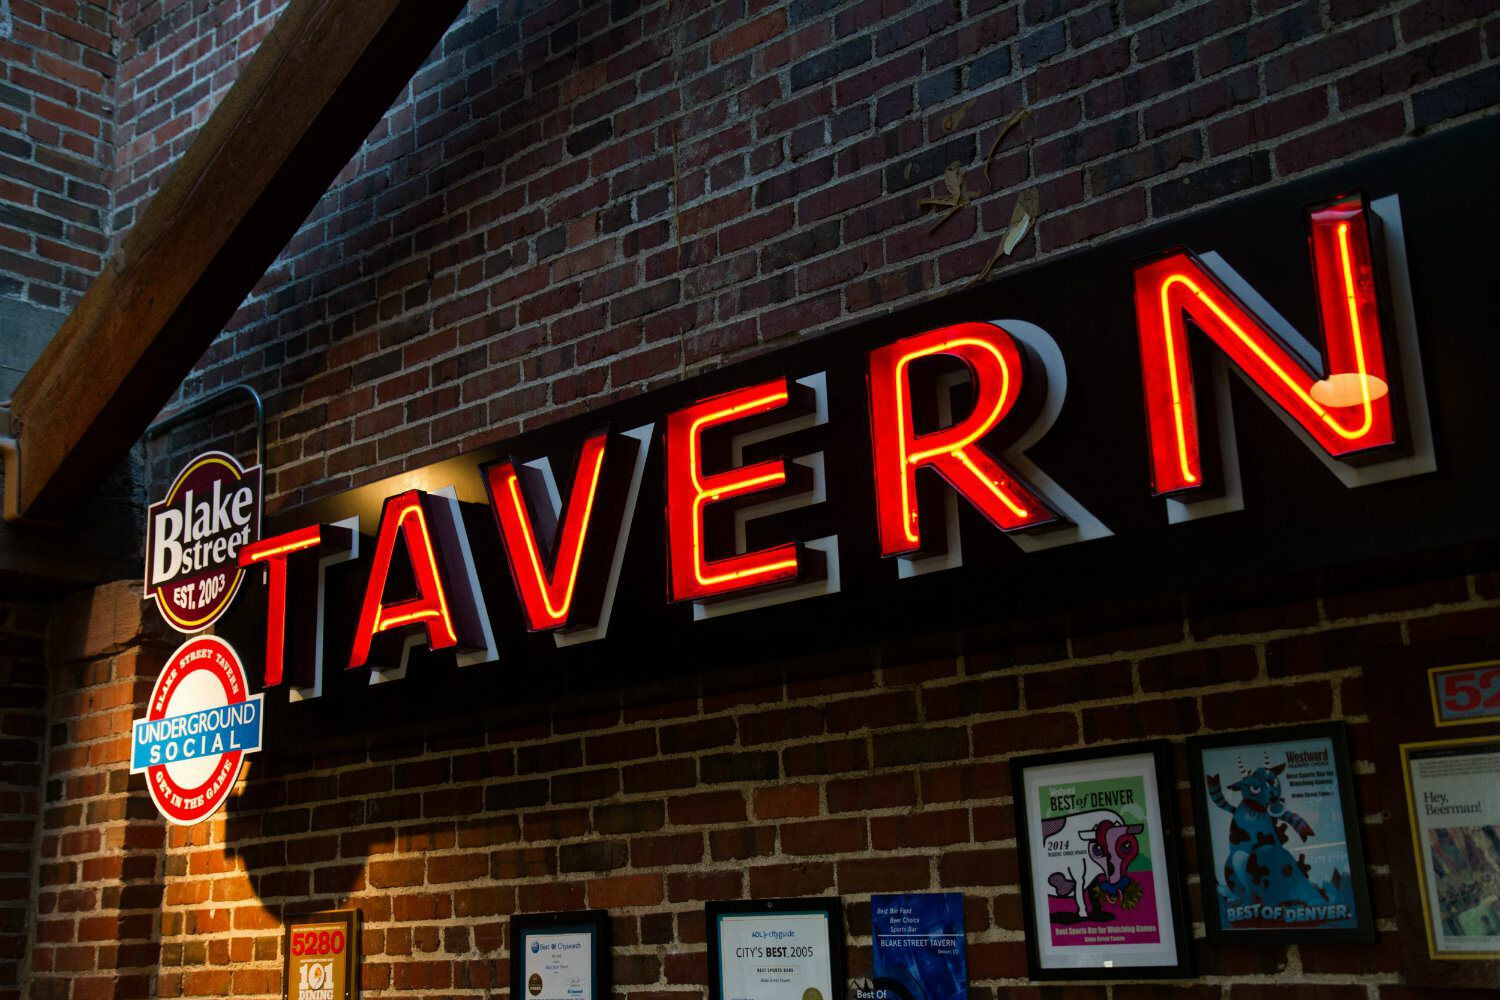 Blake Street Tavern Takeover